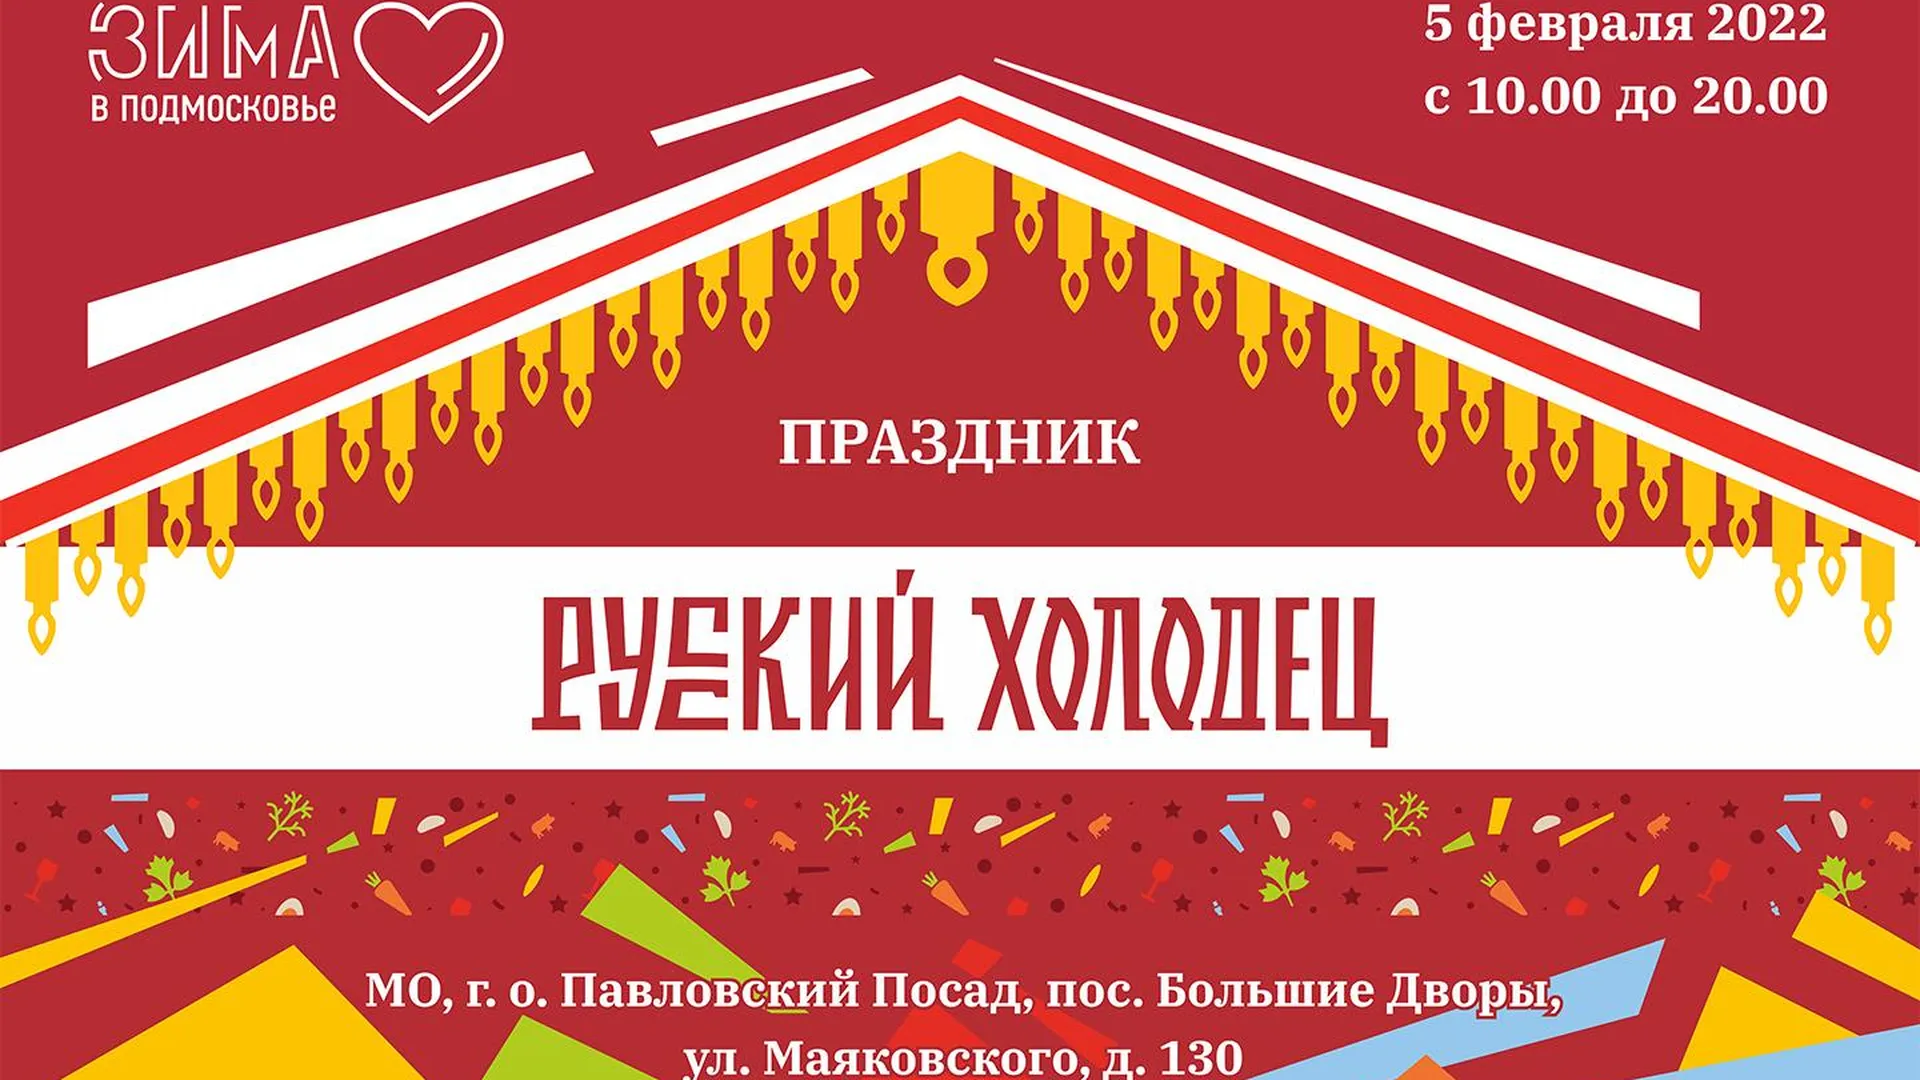 Ежегодный гастрономический фестиваль «Русский холодец» пройдет в Подмосковье 28 января